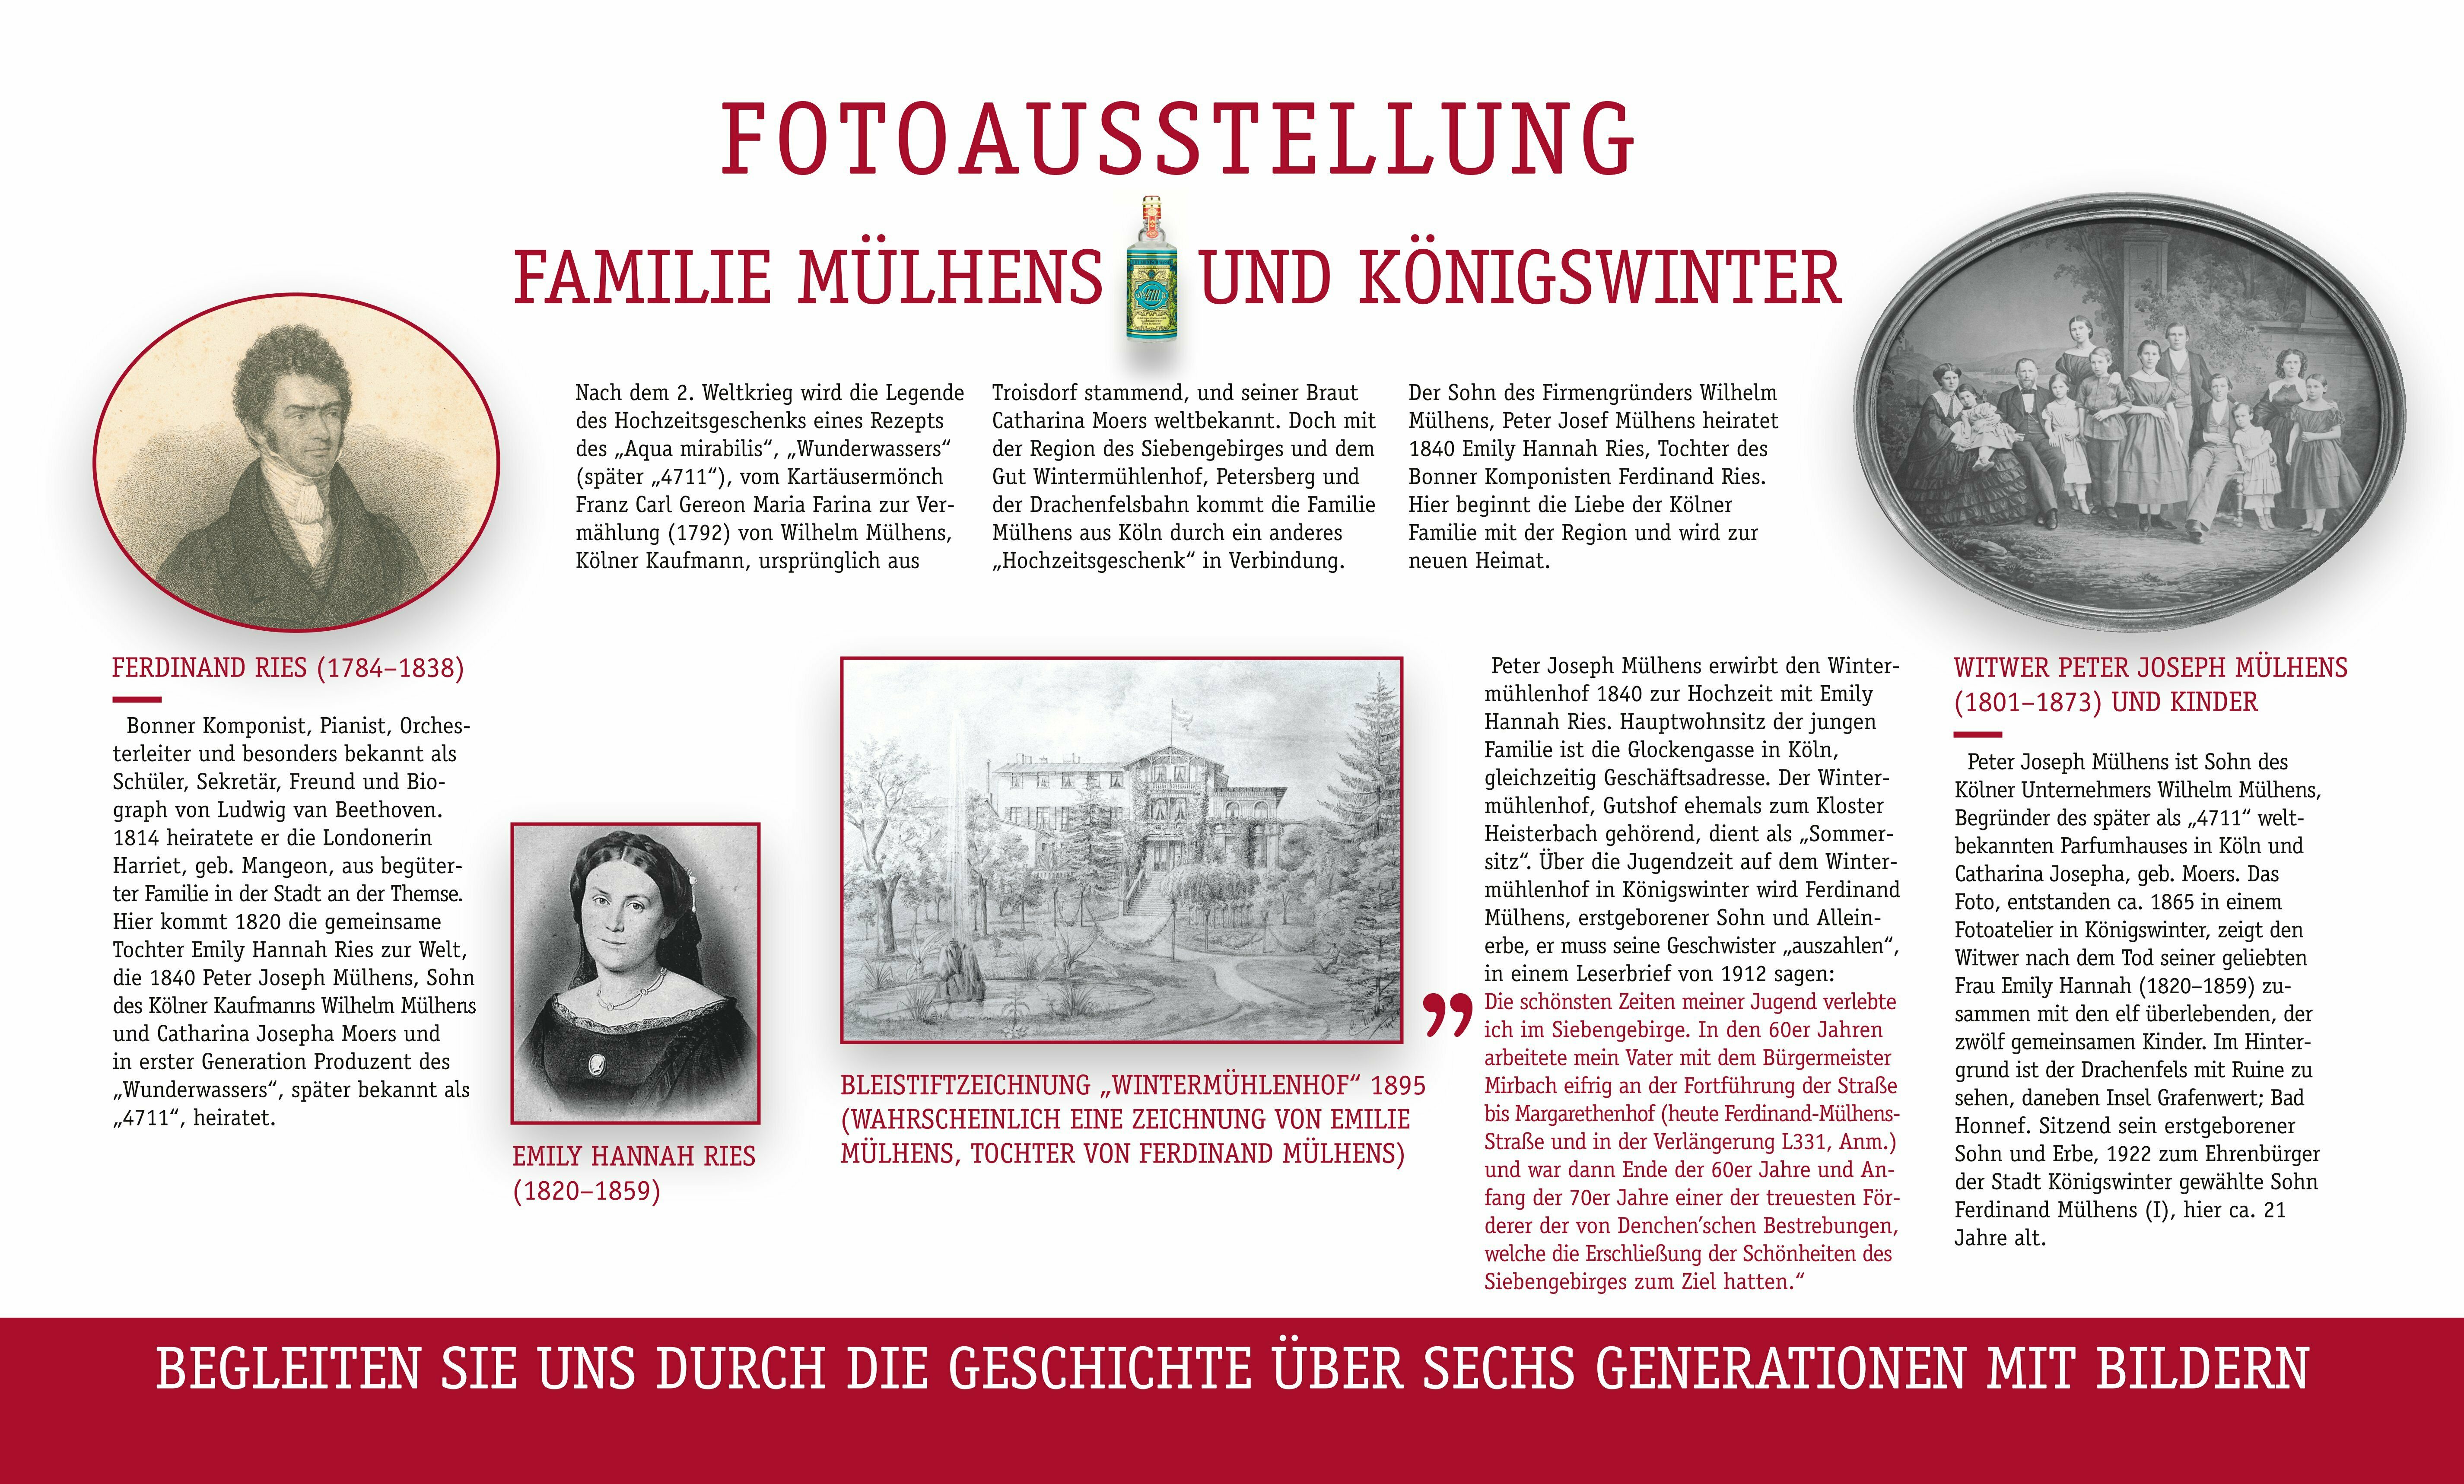 (Schaubild 1) Fotoausstellung Familie Mülhens und Königswinter